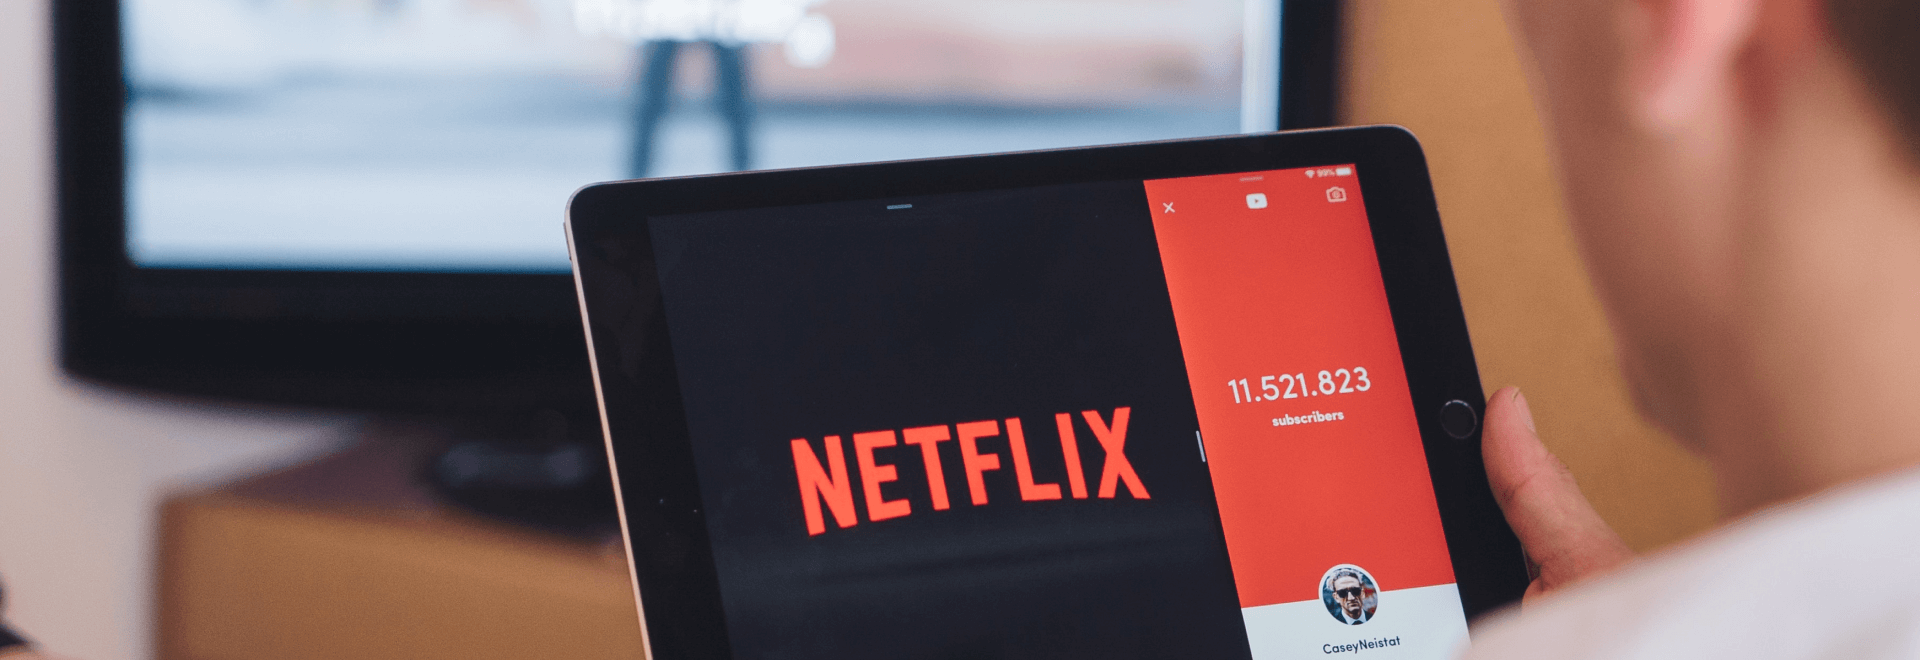 The Netflix brand image crisis explained